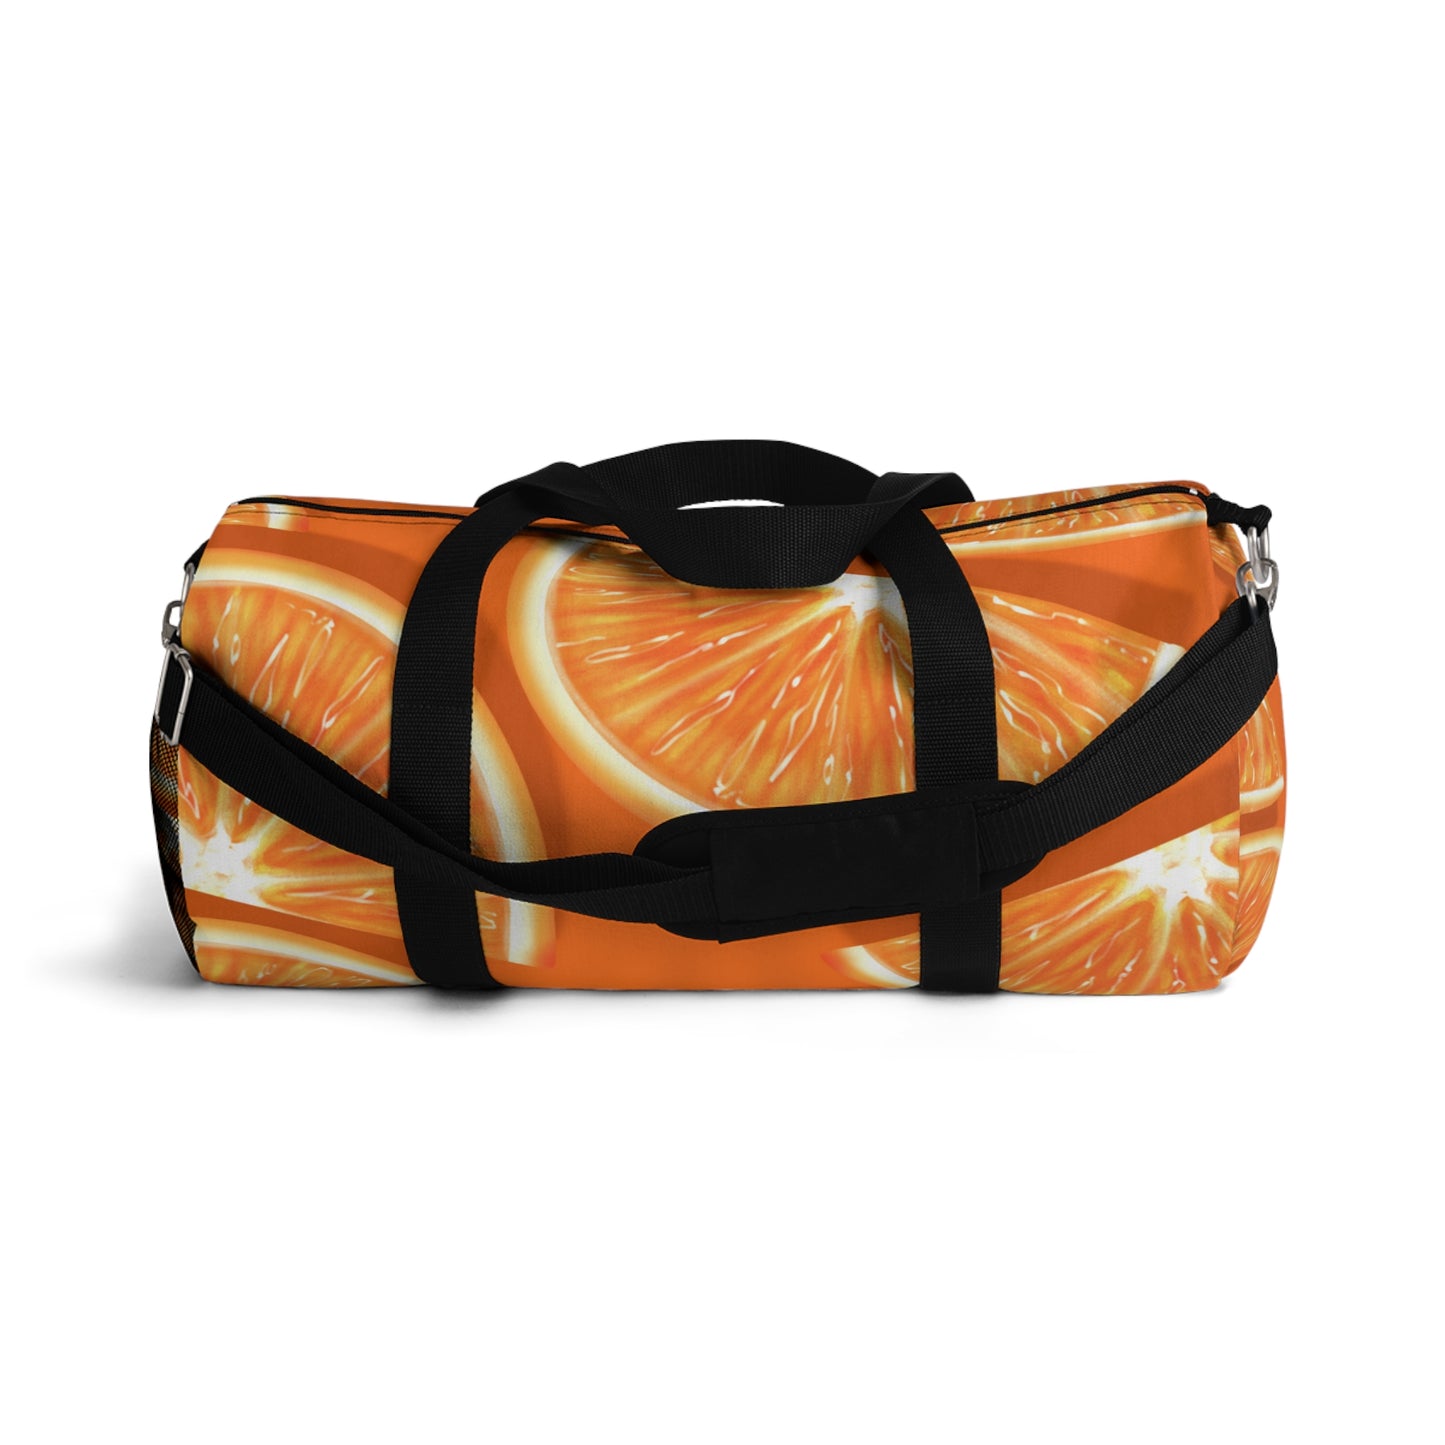 Bolsa de lona con rodajas de naranja fresca 